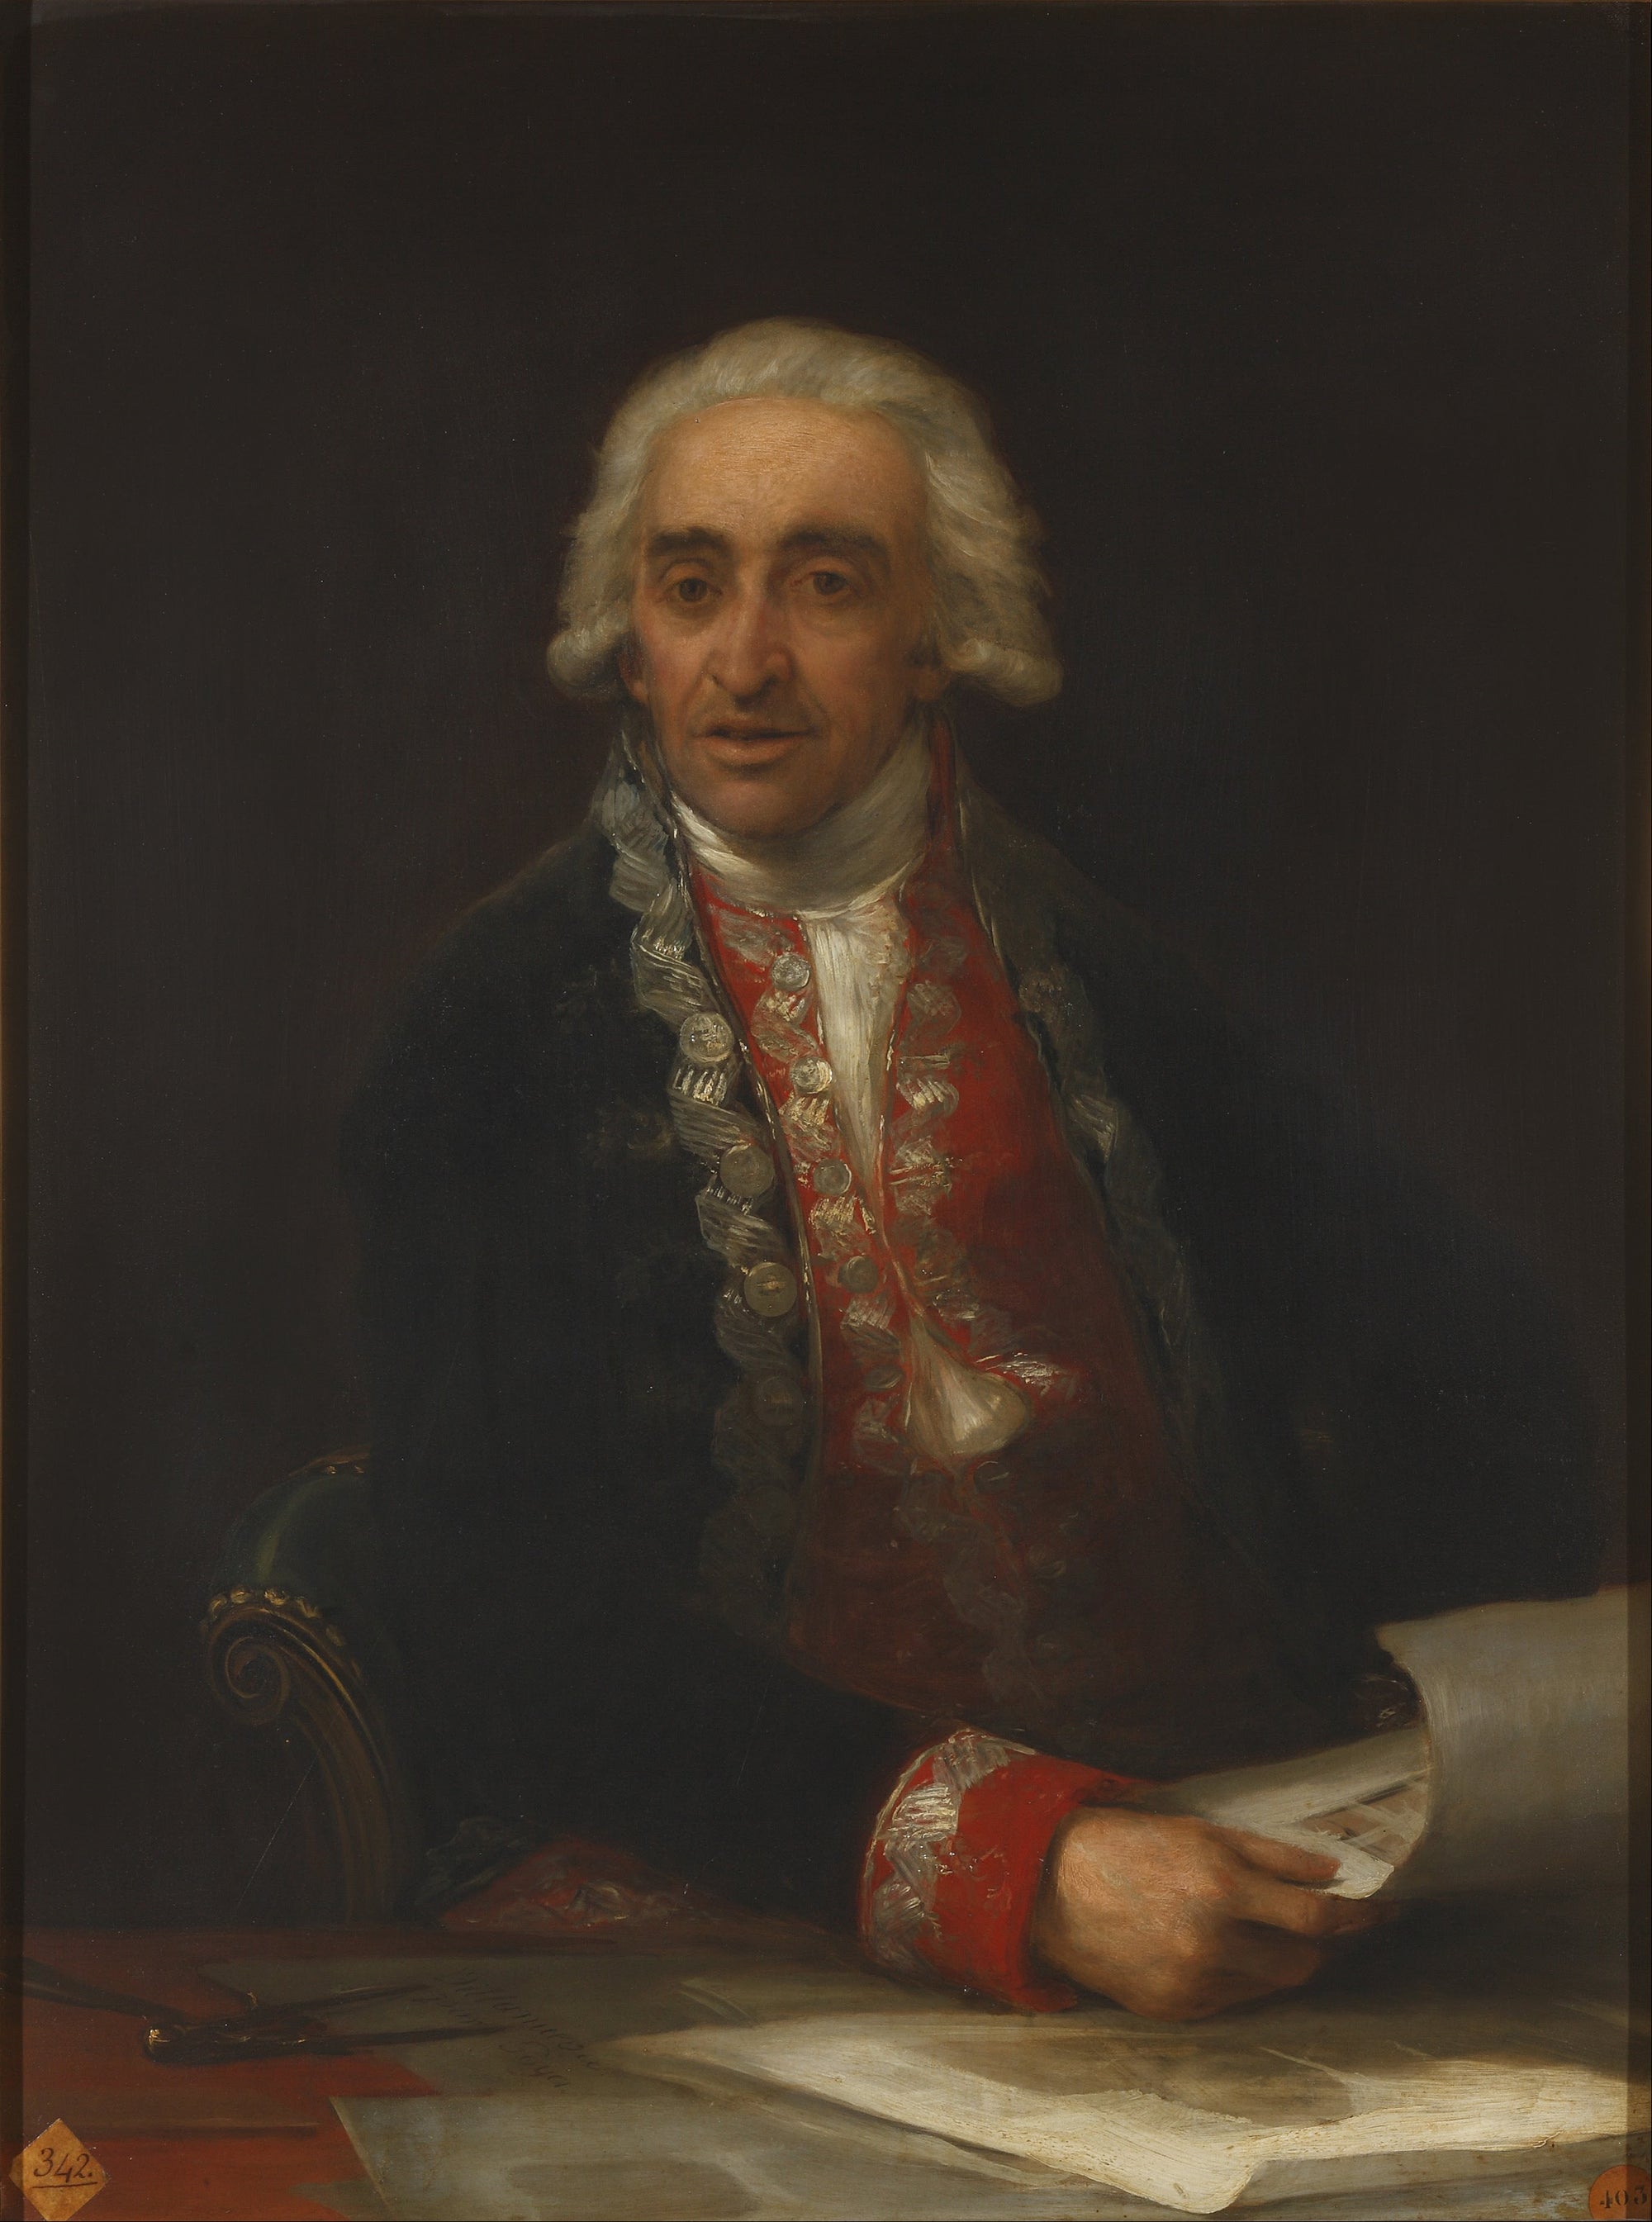 Portrait de Juan de Villanueva - Francisco de Goya